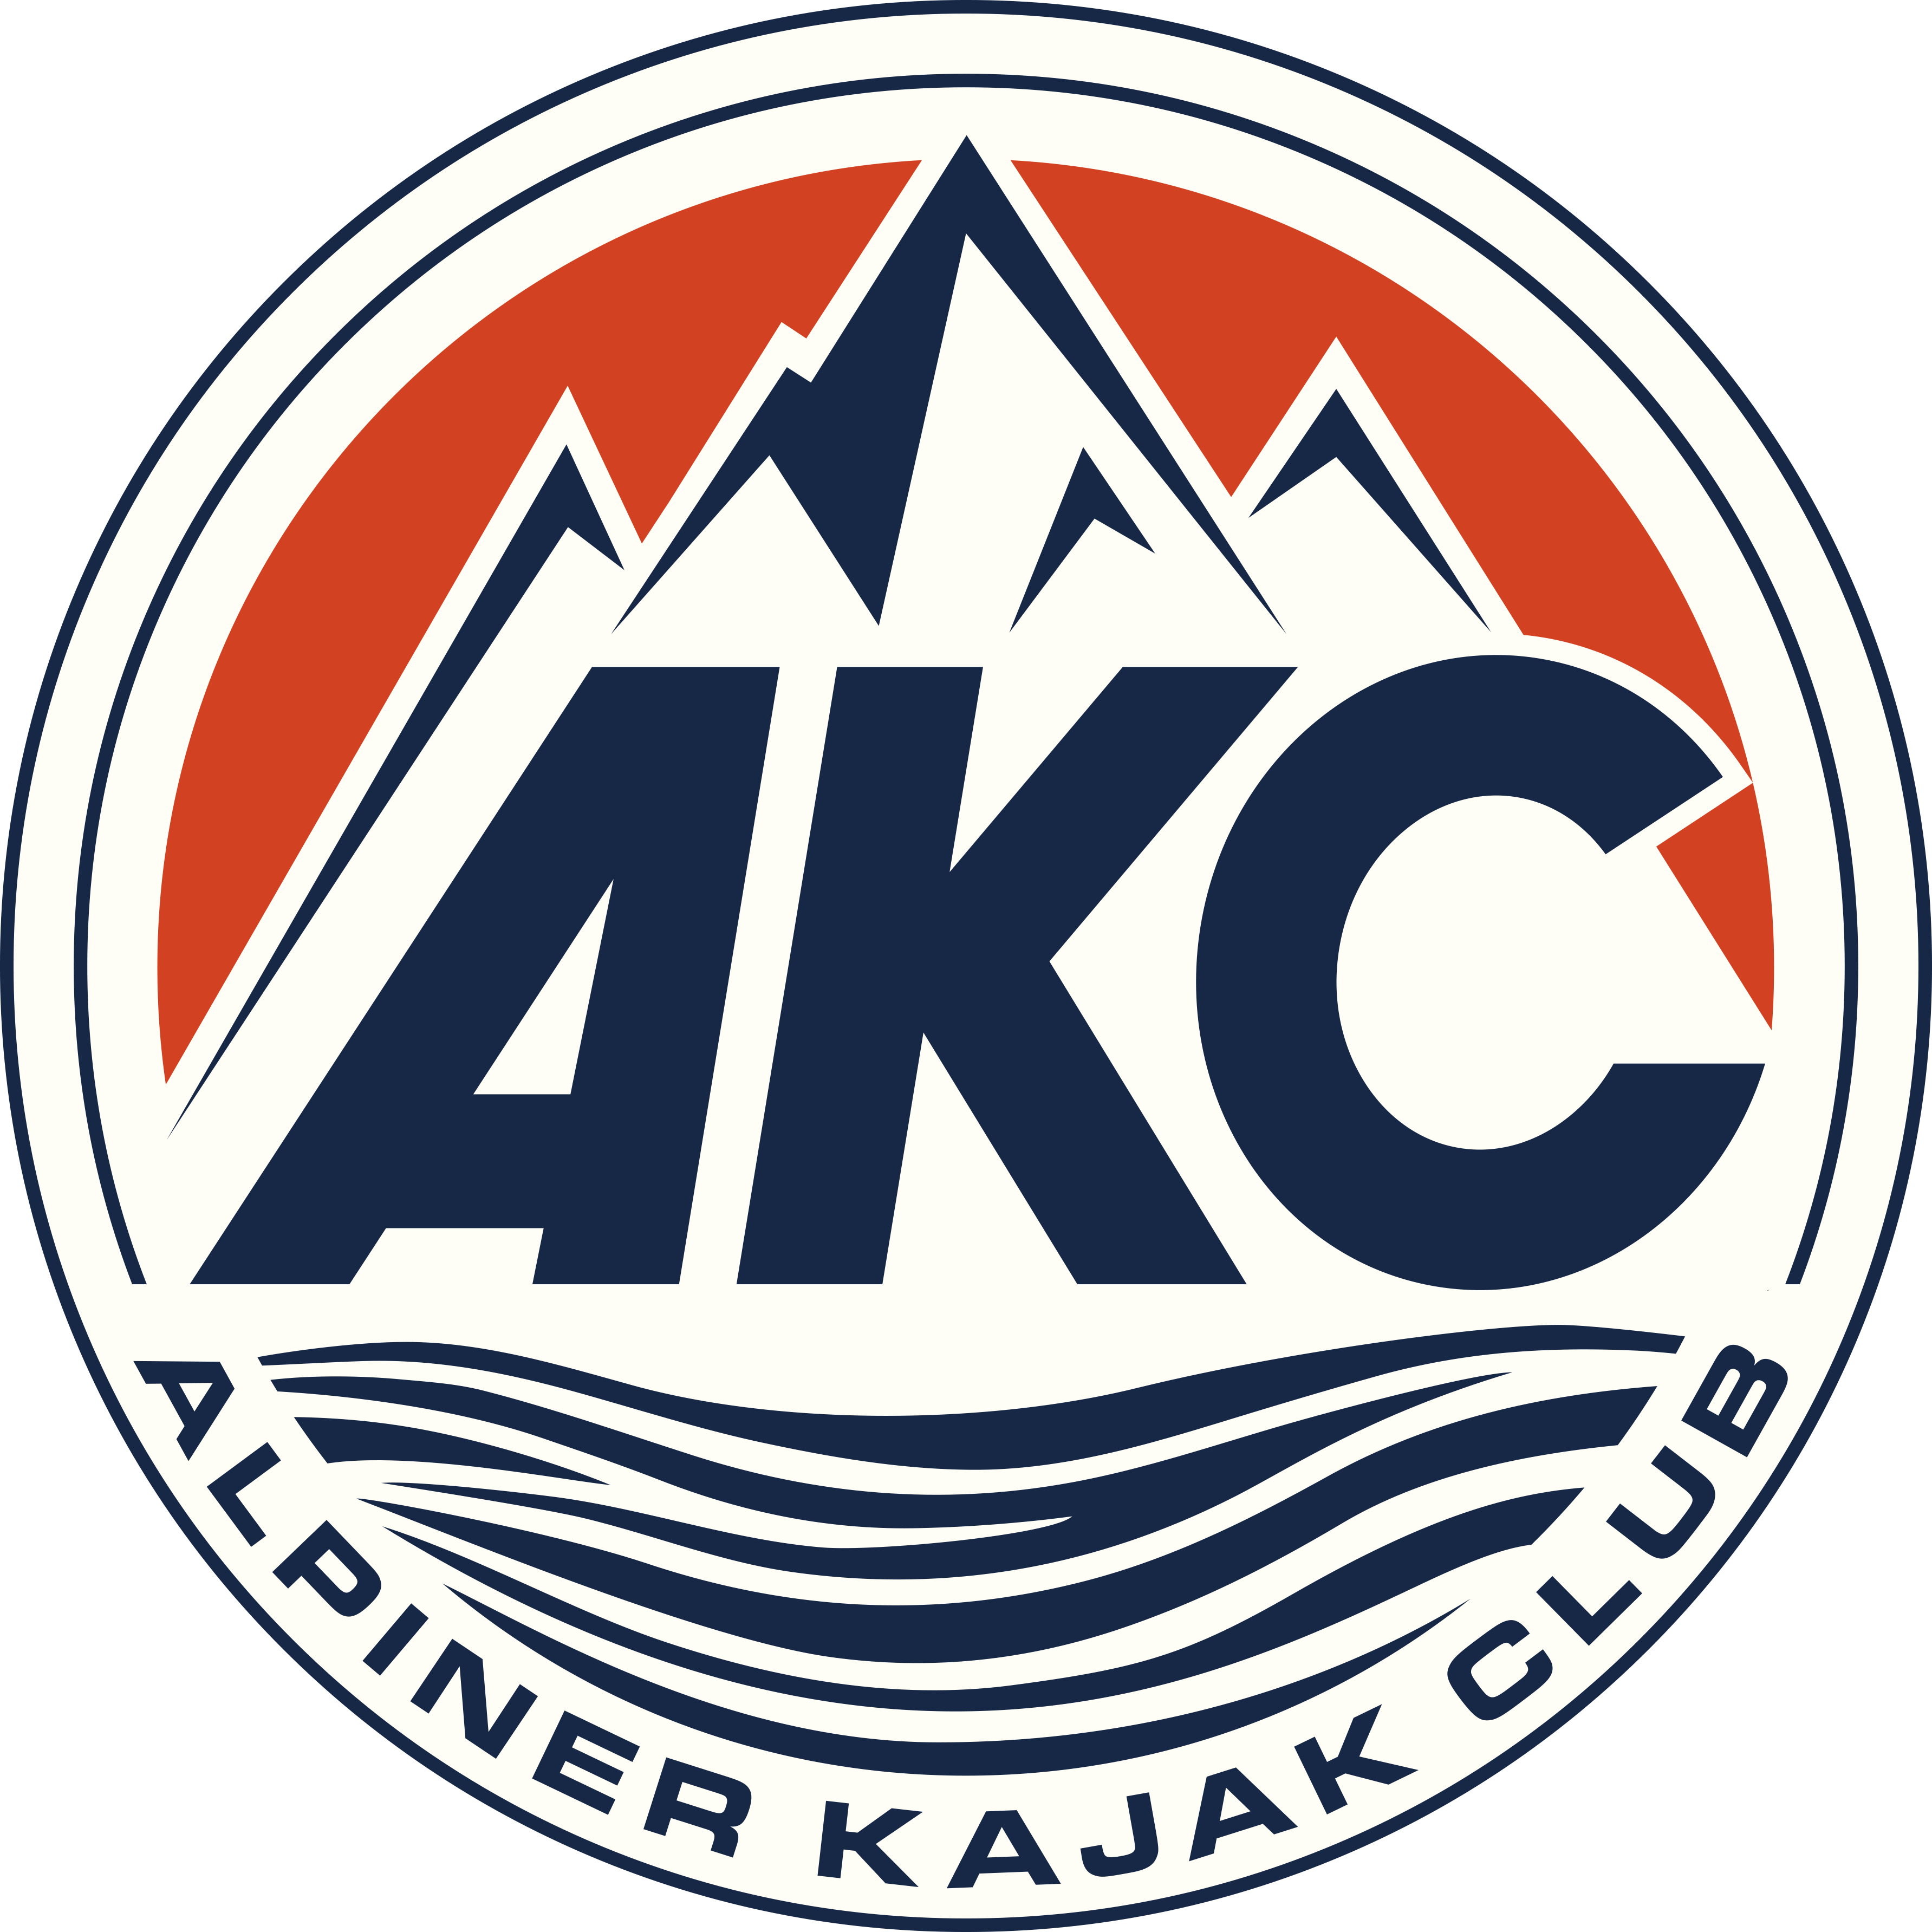 Alpiner kajak club - Vertrauen Sie dem Sieger der Tester